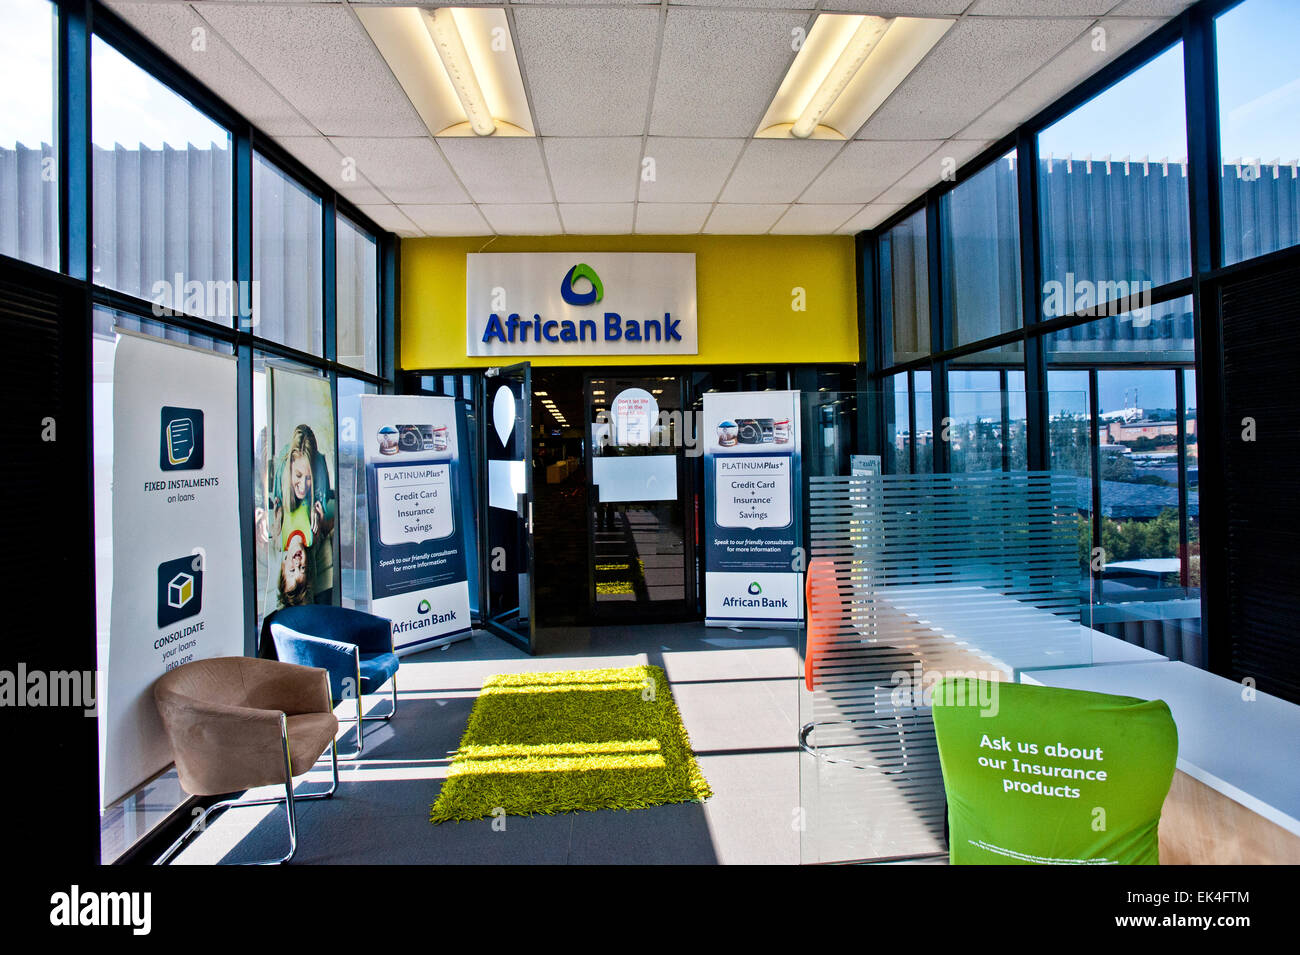 Banque de l'Afrique Conférence de presse : Une mise à jour sur la curatelle et la restructuration de la Banque africaine ainsi qu'une nouvelle annonce de mise en garde. Bel Verasamy Pic Banque D'Images